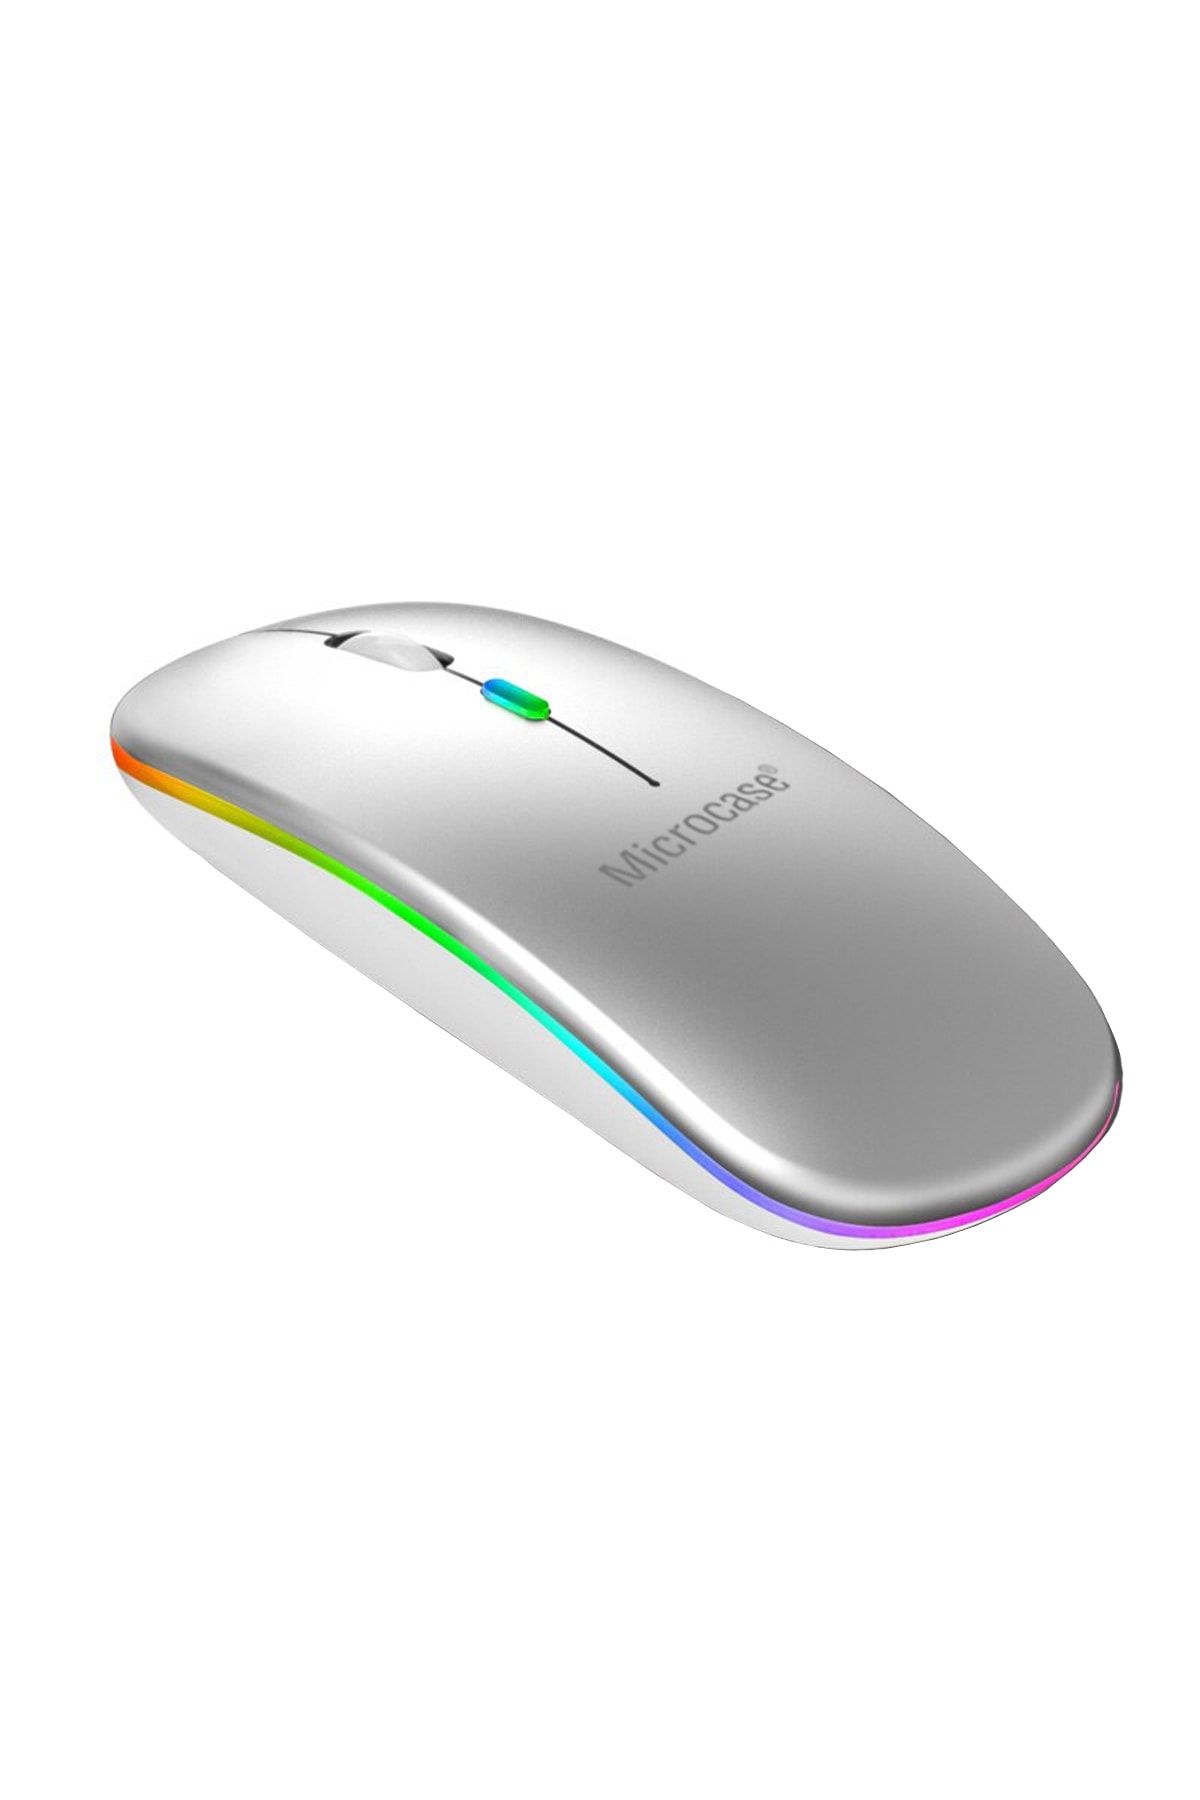 Microcase 1600 Dpı Şarj Edilebilir 2.4 Ghz Rgb Işık Çift Modlu Bluetooth Mouse - Al2767 Gümüş